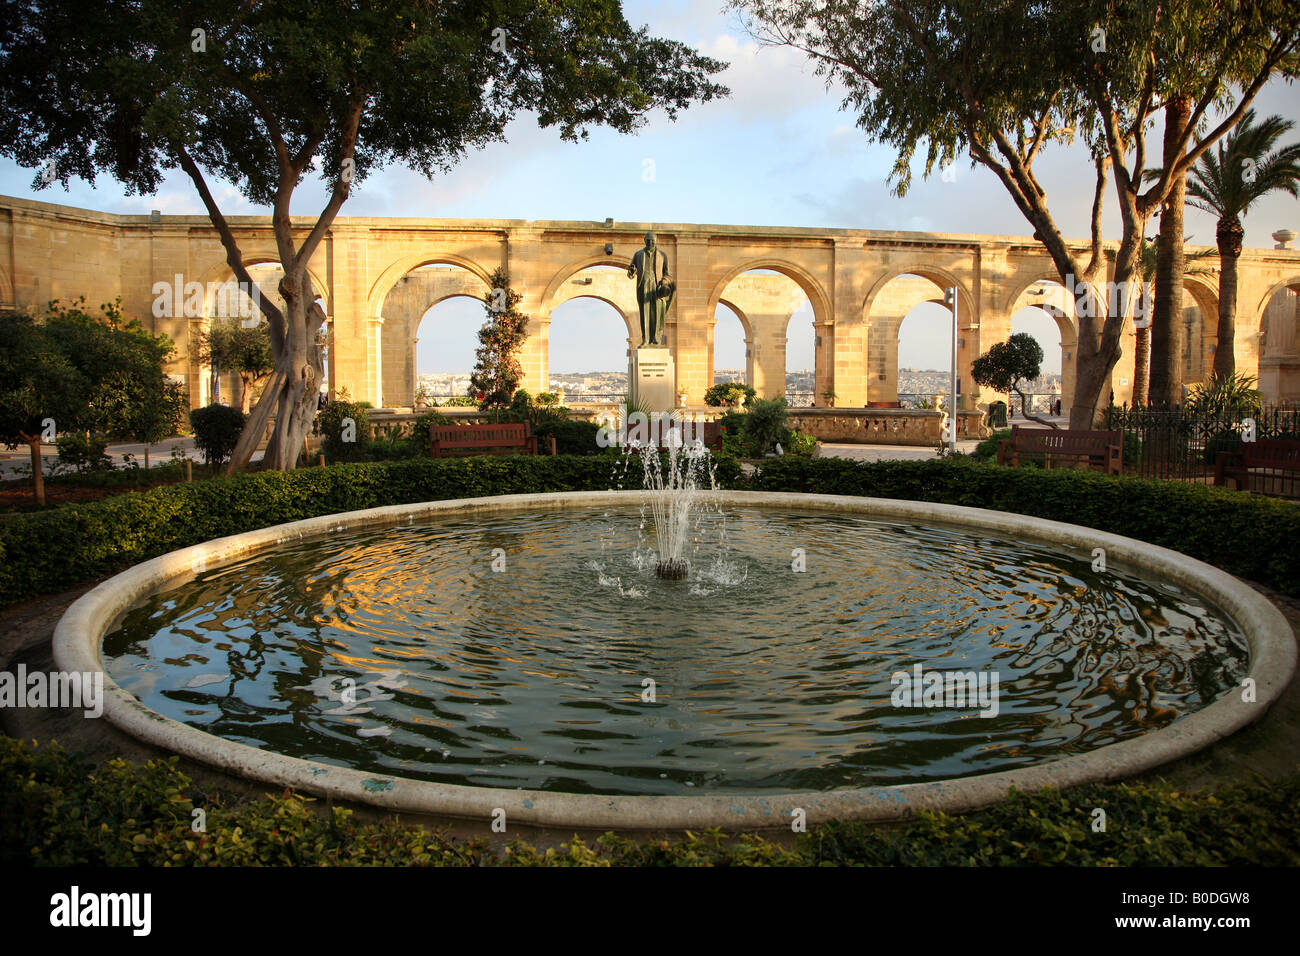 The Upper Barracca gardens in Valletta Malta Stock Photo